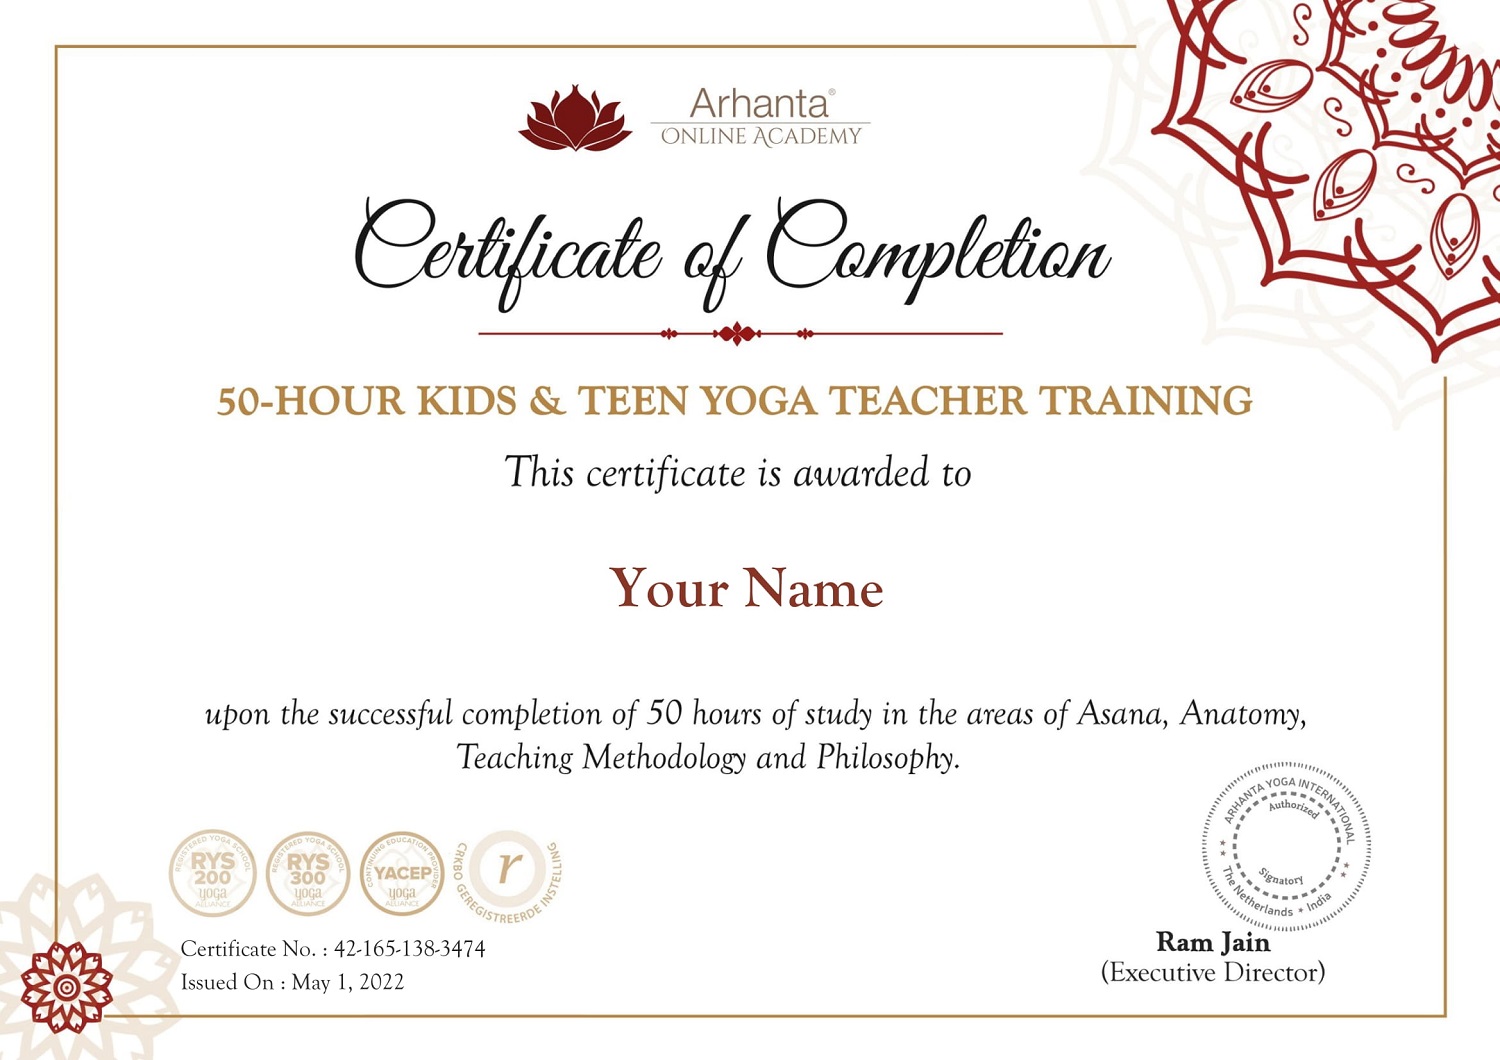 Certificato di formazione per insegnanti di yoga per bambini e ragazzi di 50 ore